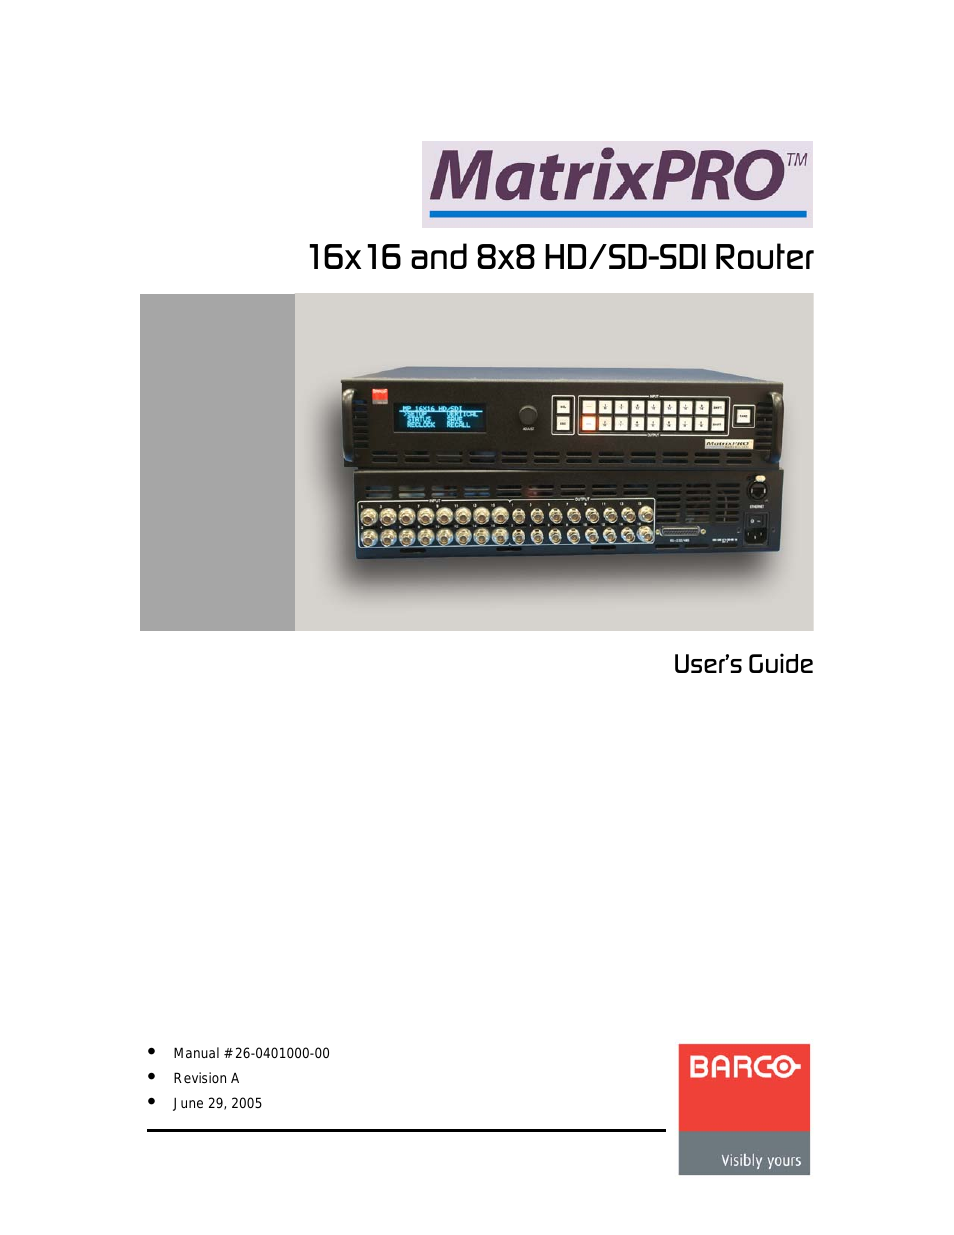 MatrixPro 16x16